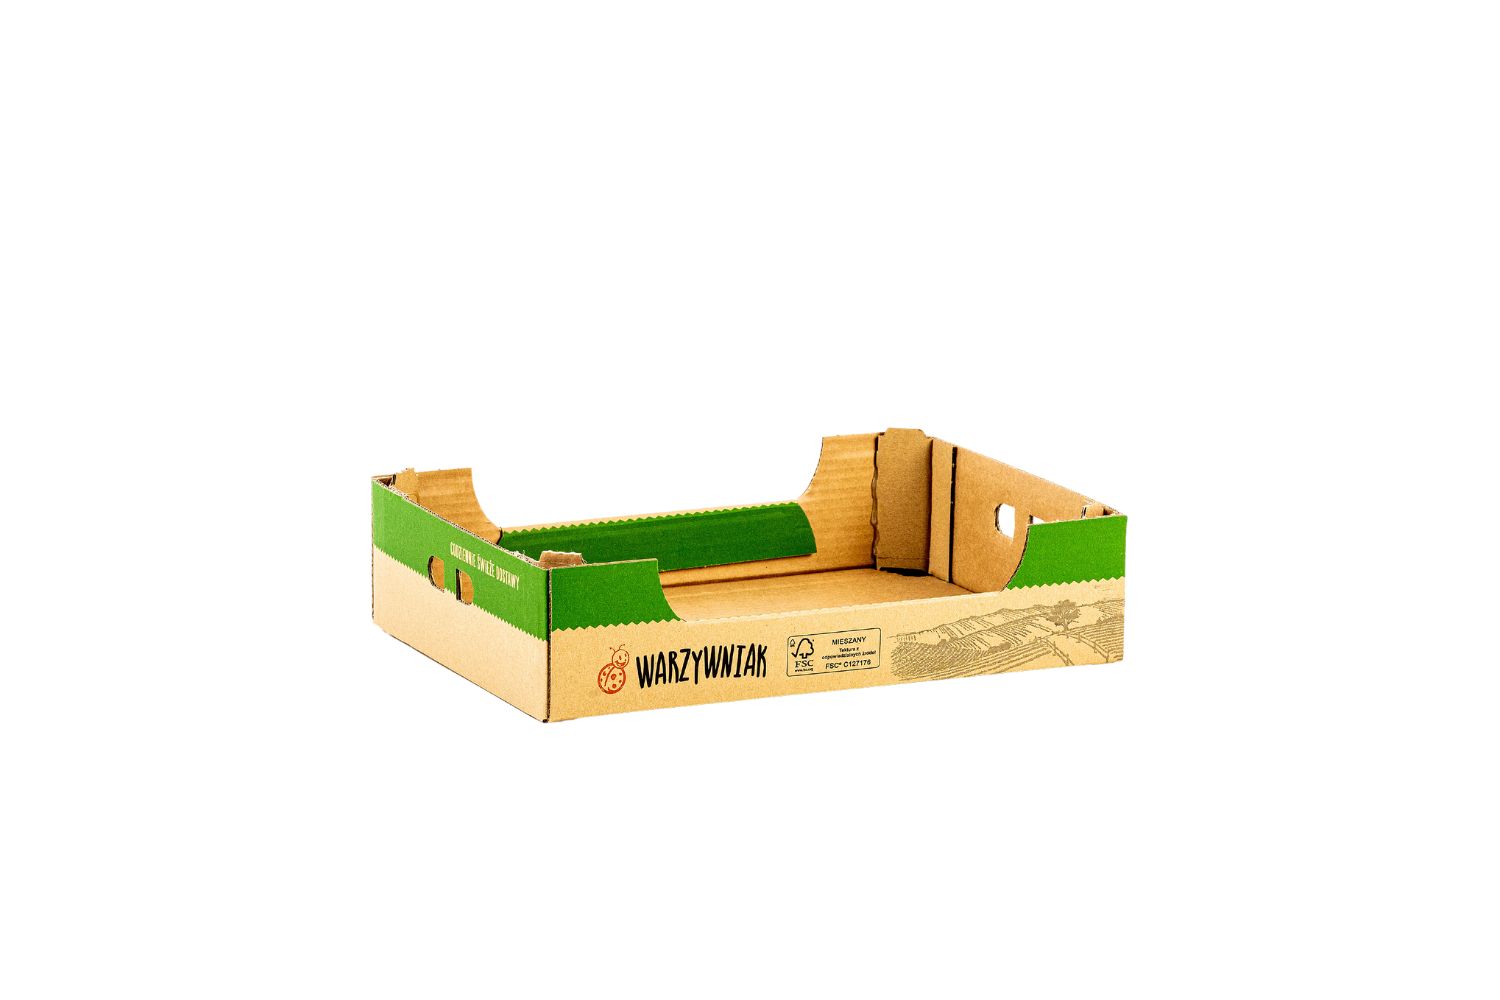 Polkarton Bęza kartony karton 3,5kg warzywniak mini kartony grójec warka błędów biała rawska producent kartonów karton 3,5 kg opakowania tekturowe